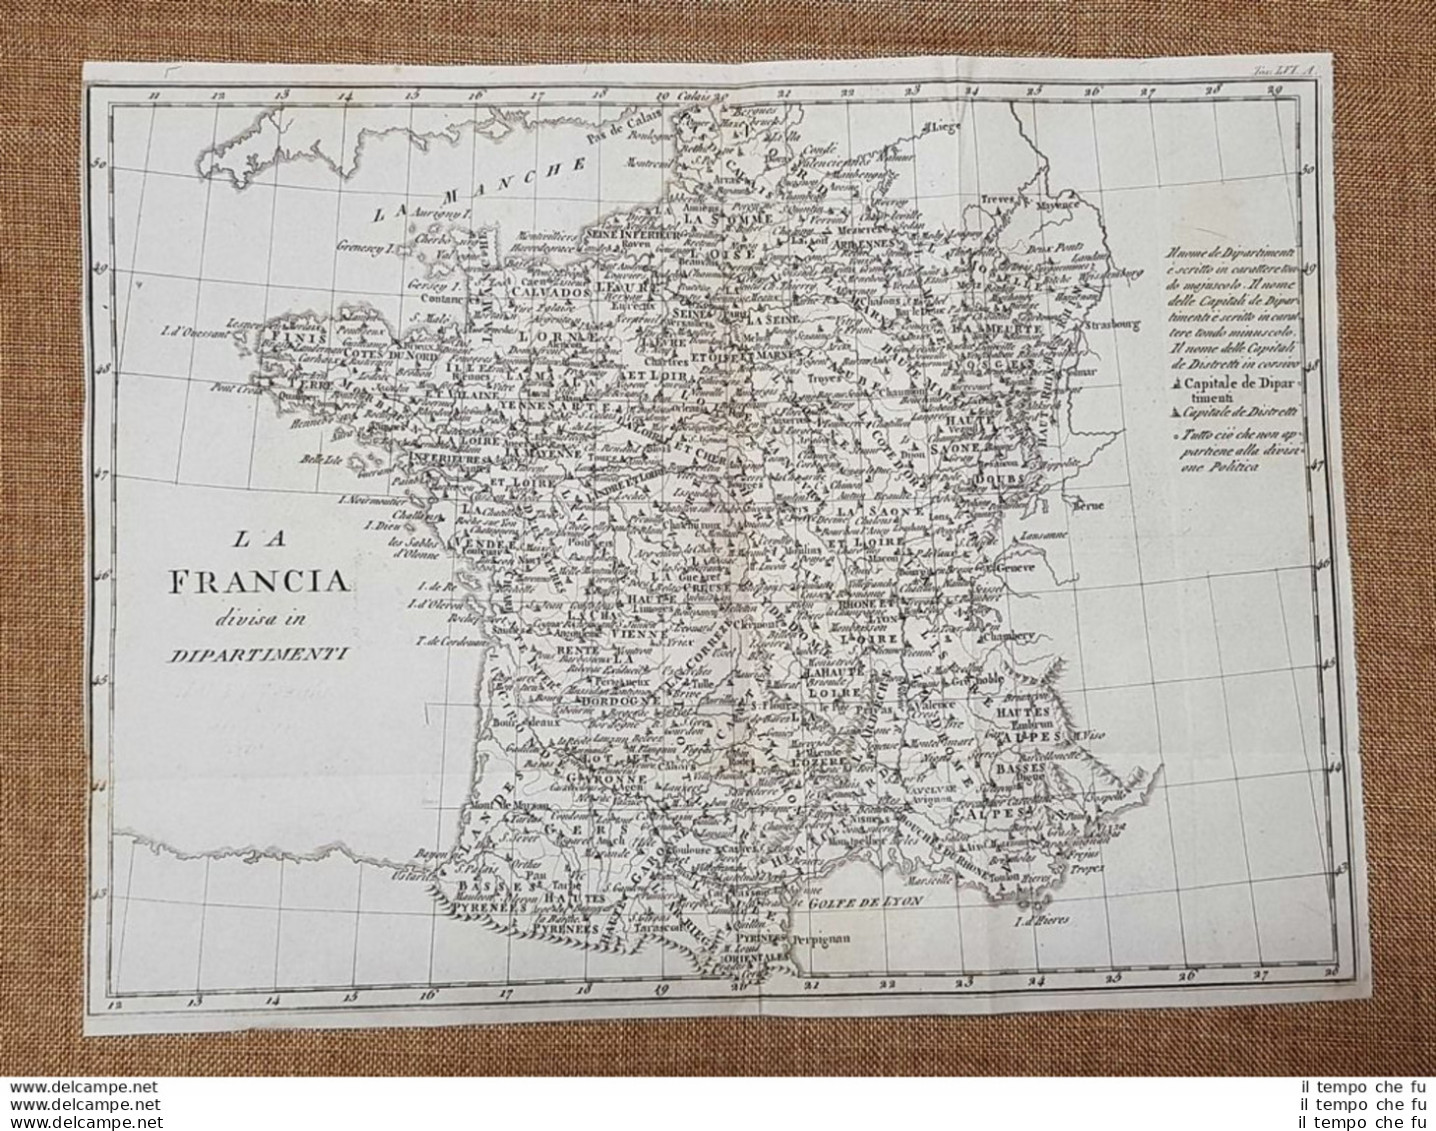 Carta Geografica O Mappa Francia Divisa In Dipartimenti Leonardo Cacciatore 1831 - Geographische Kaarten